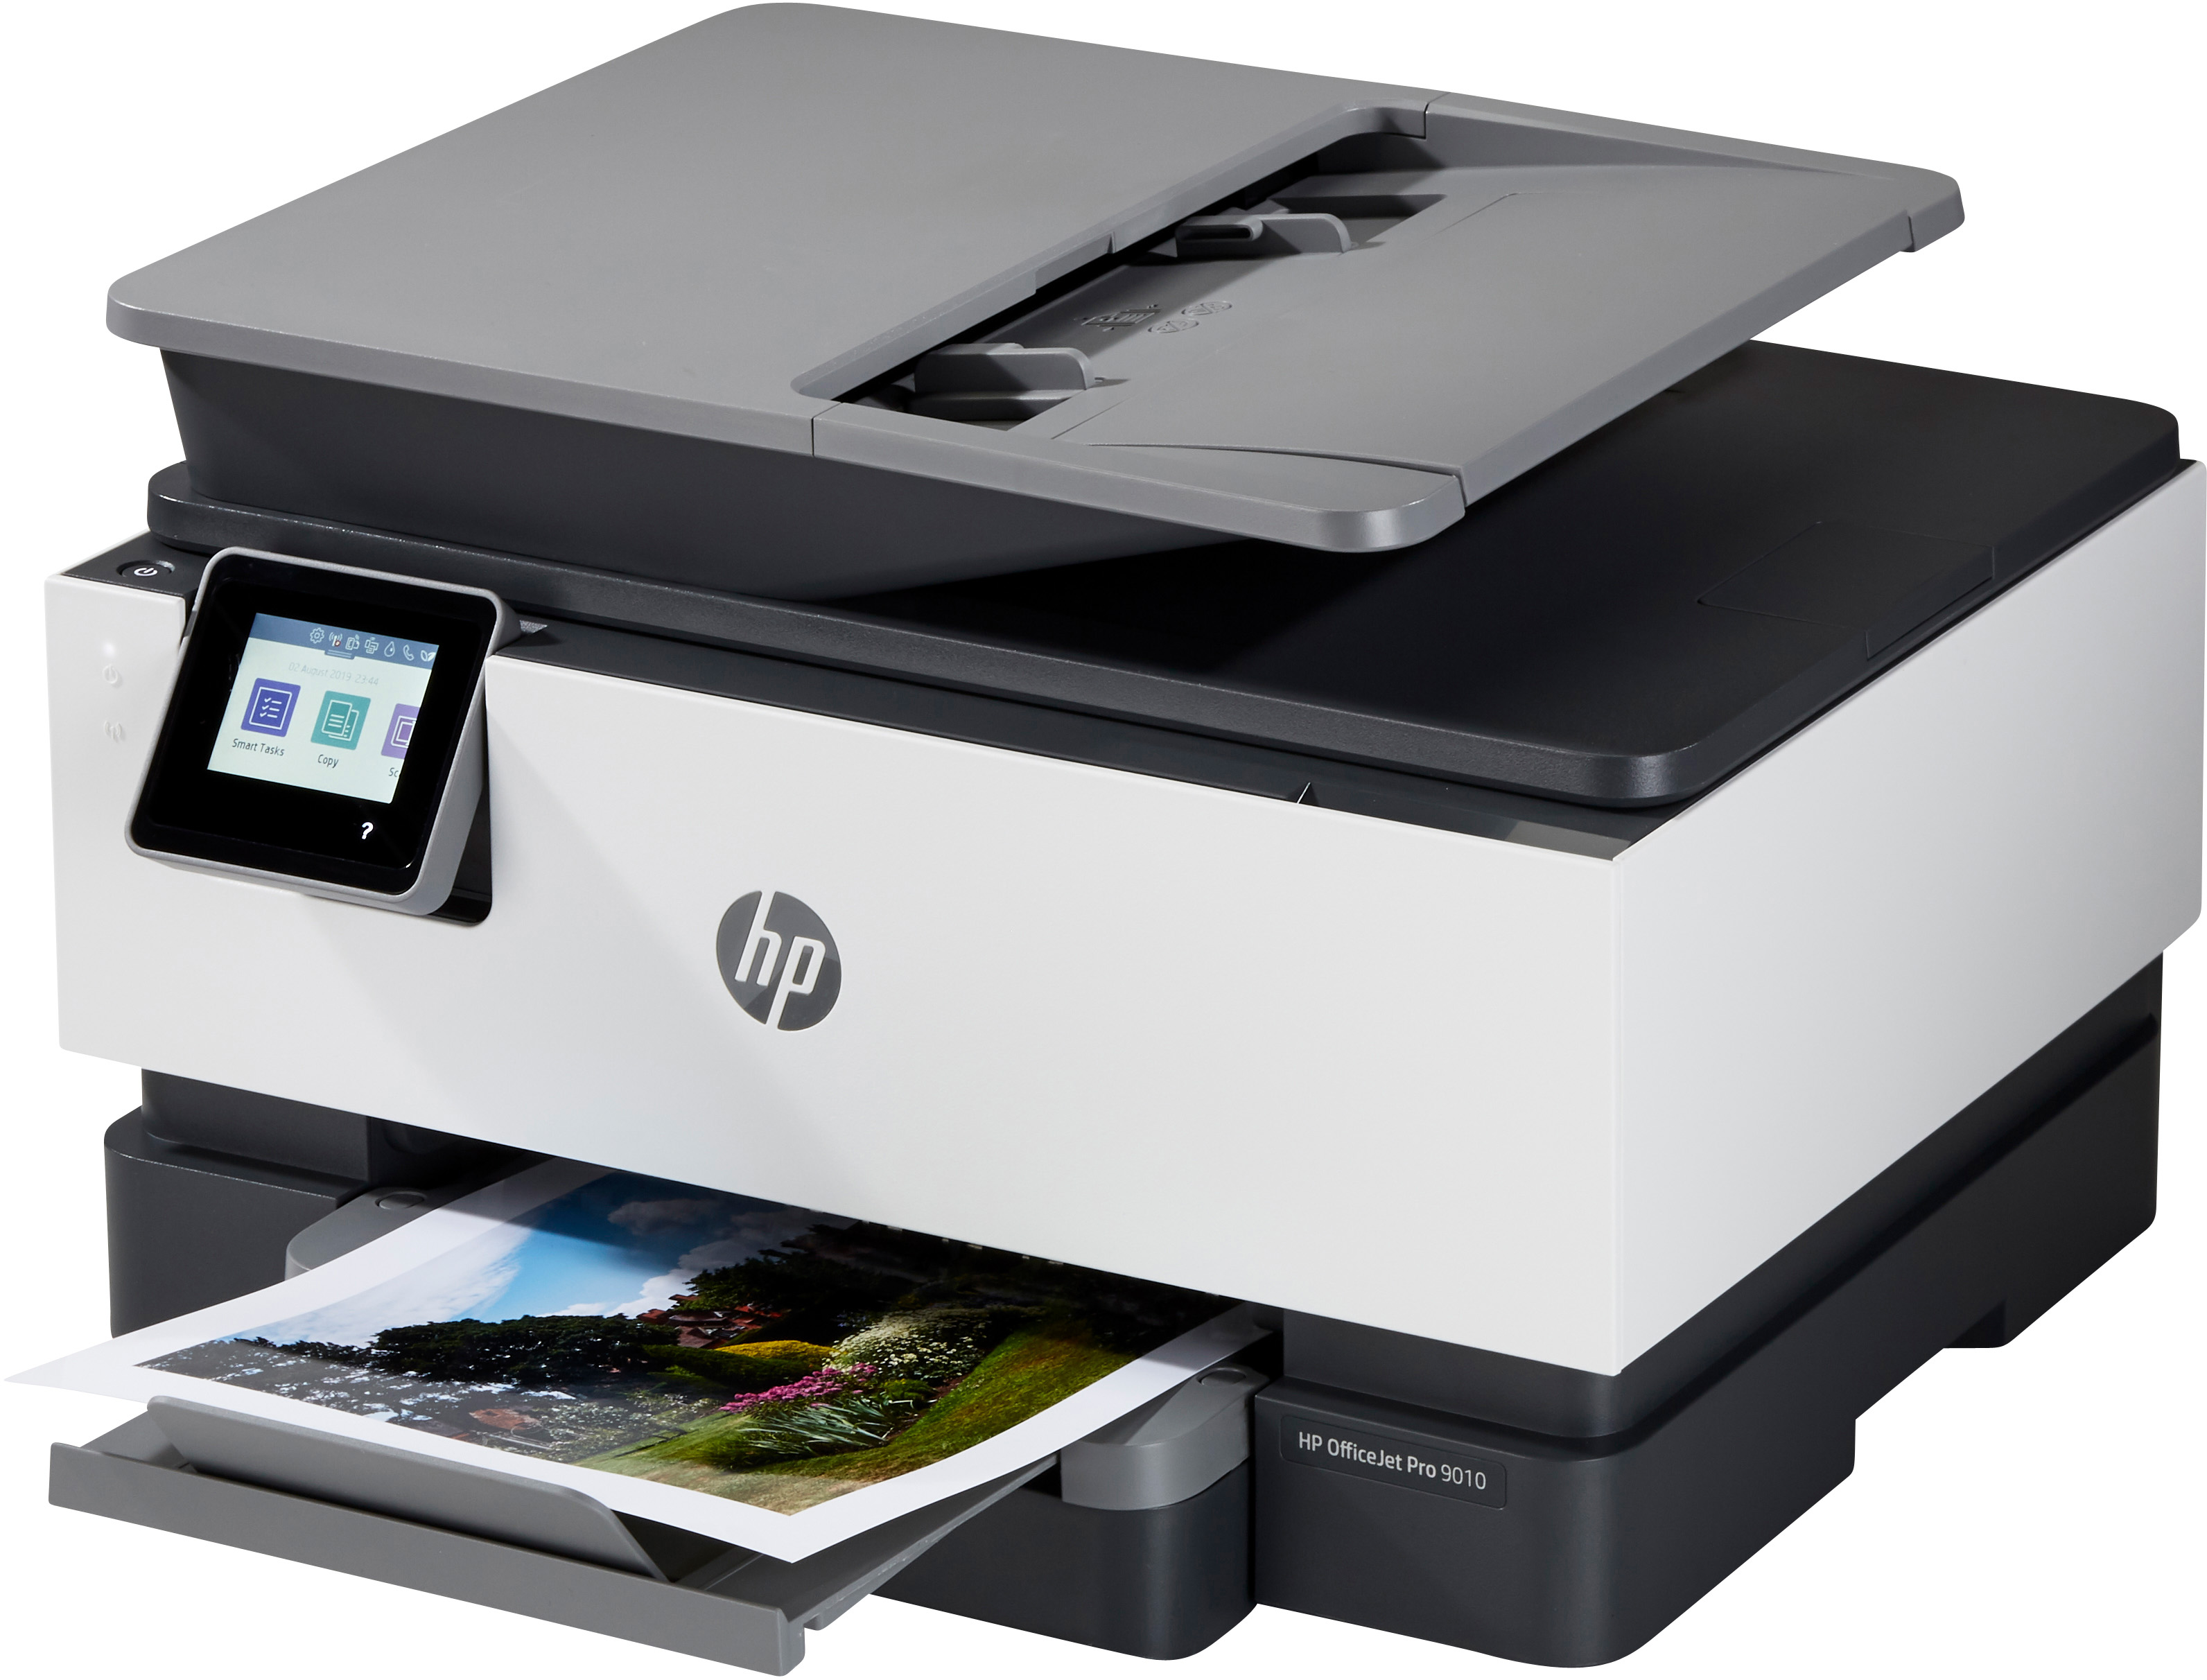 Impresora HP Multifunción Pro 910 imprime, copia, escanea, fax-Pantalla táctil en color, impresión y escaneado a doble cara, Wifi 22 ppm negro y 18 ppm en color